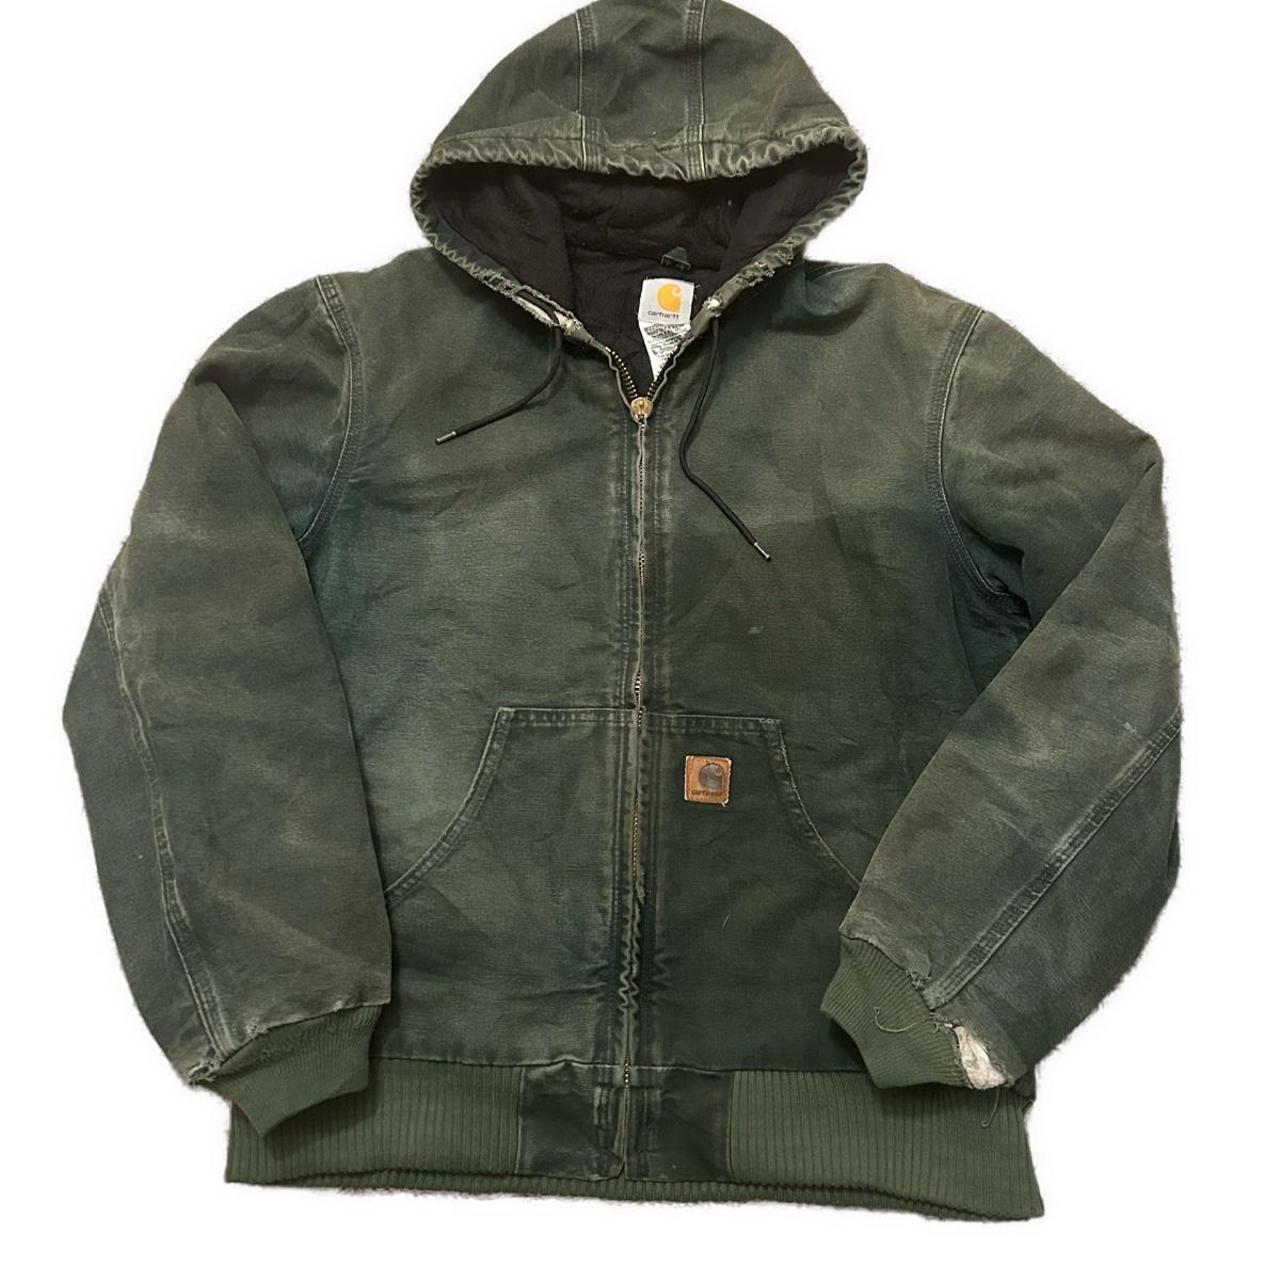 Vintage Green Carhartt Jacket Medium - 22x26 Has... - Depop